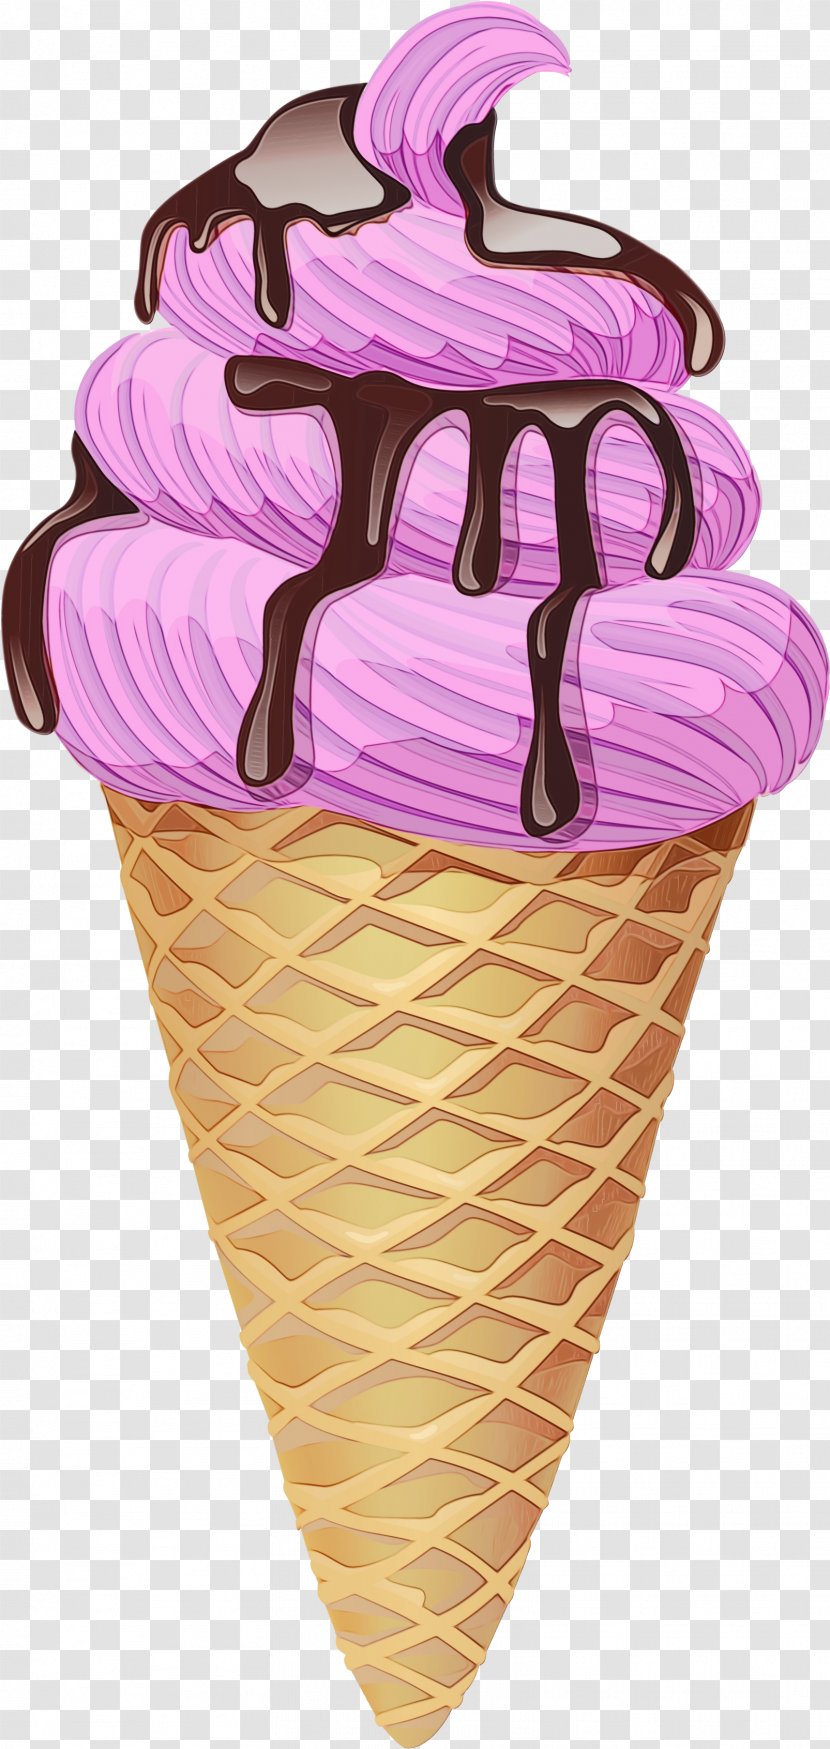 Ice Cream Cone Background - Cones - Neapolitan Dairy Transparent PNG